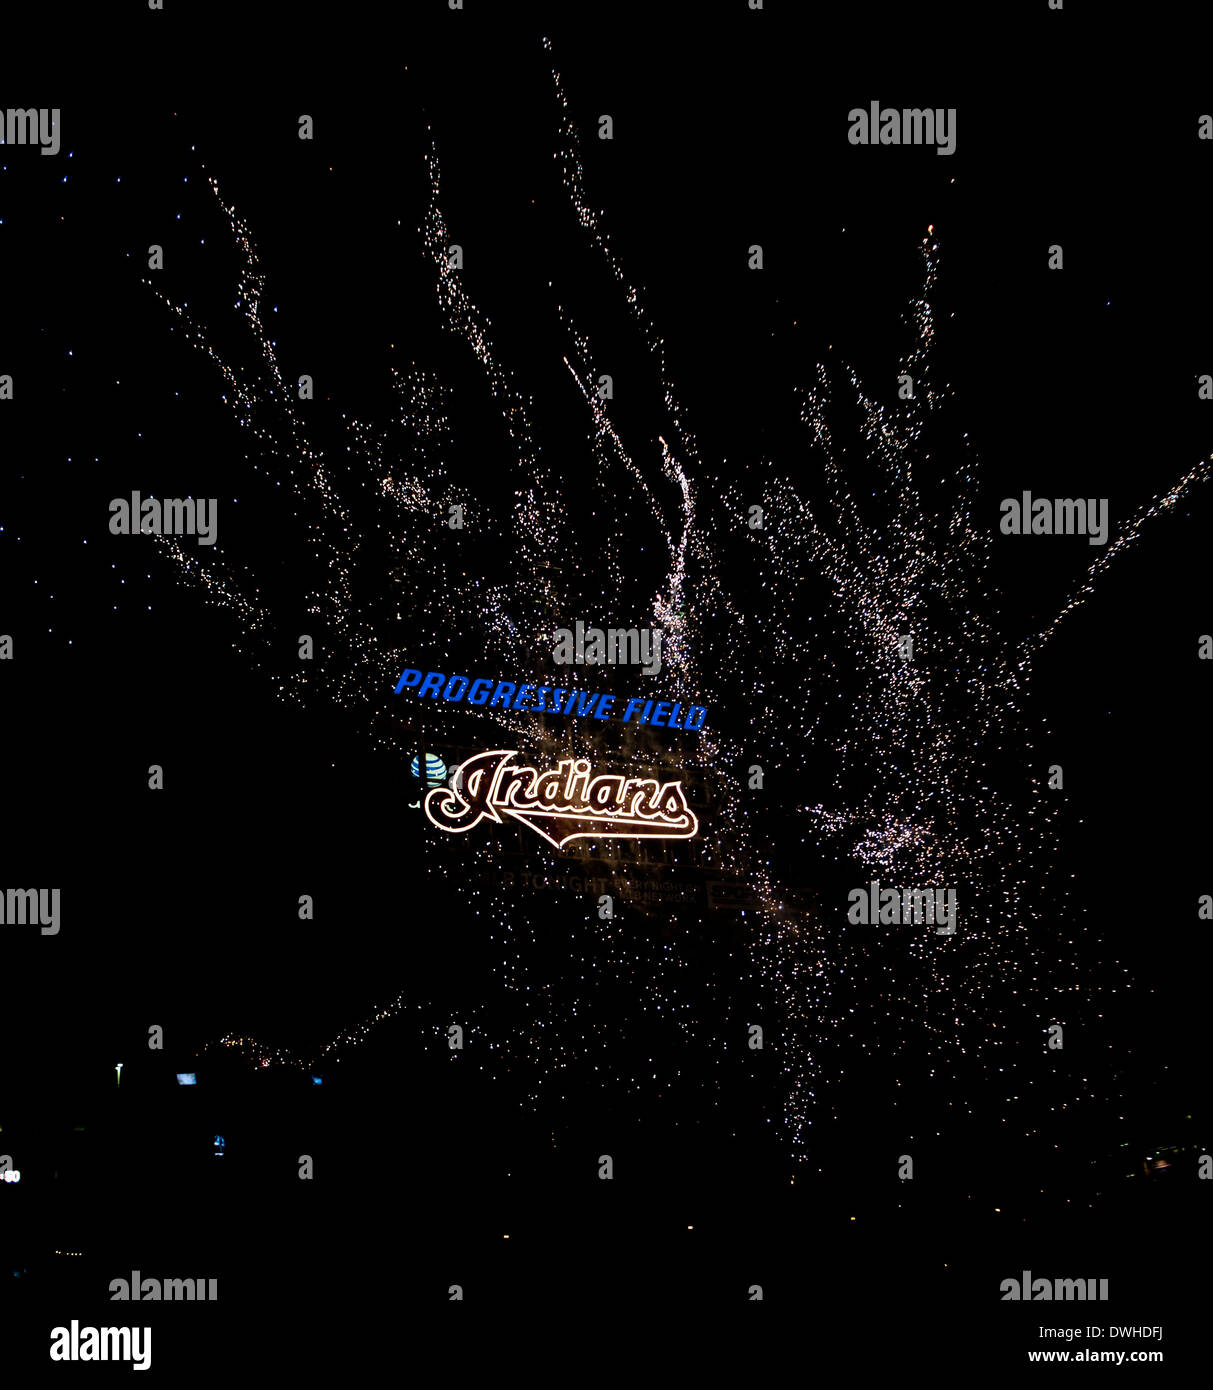 Feuerwerk am Progressive Field, der Heimat von den Cleveland Indians Stockfoto